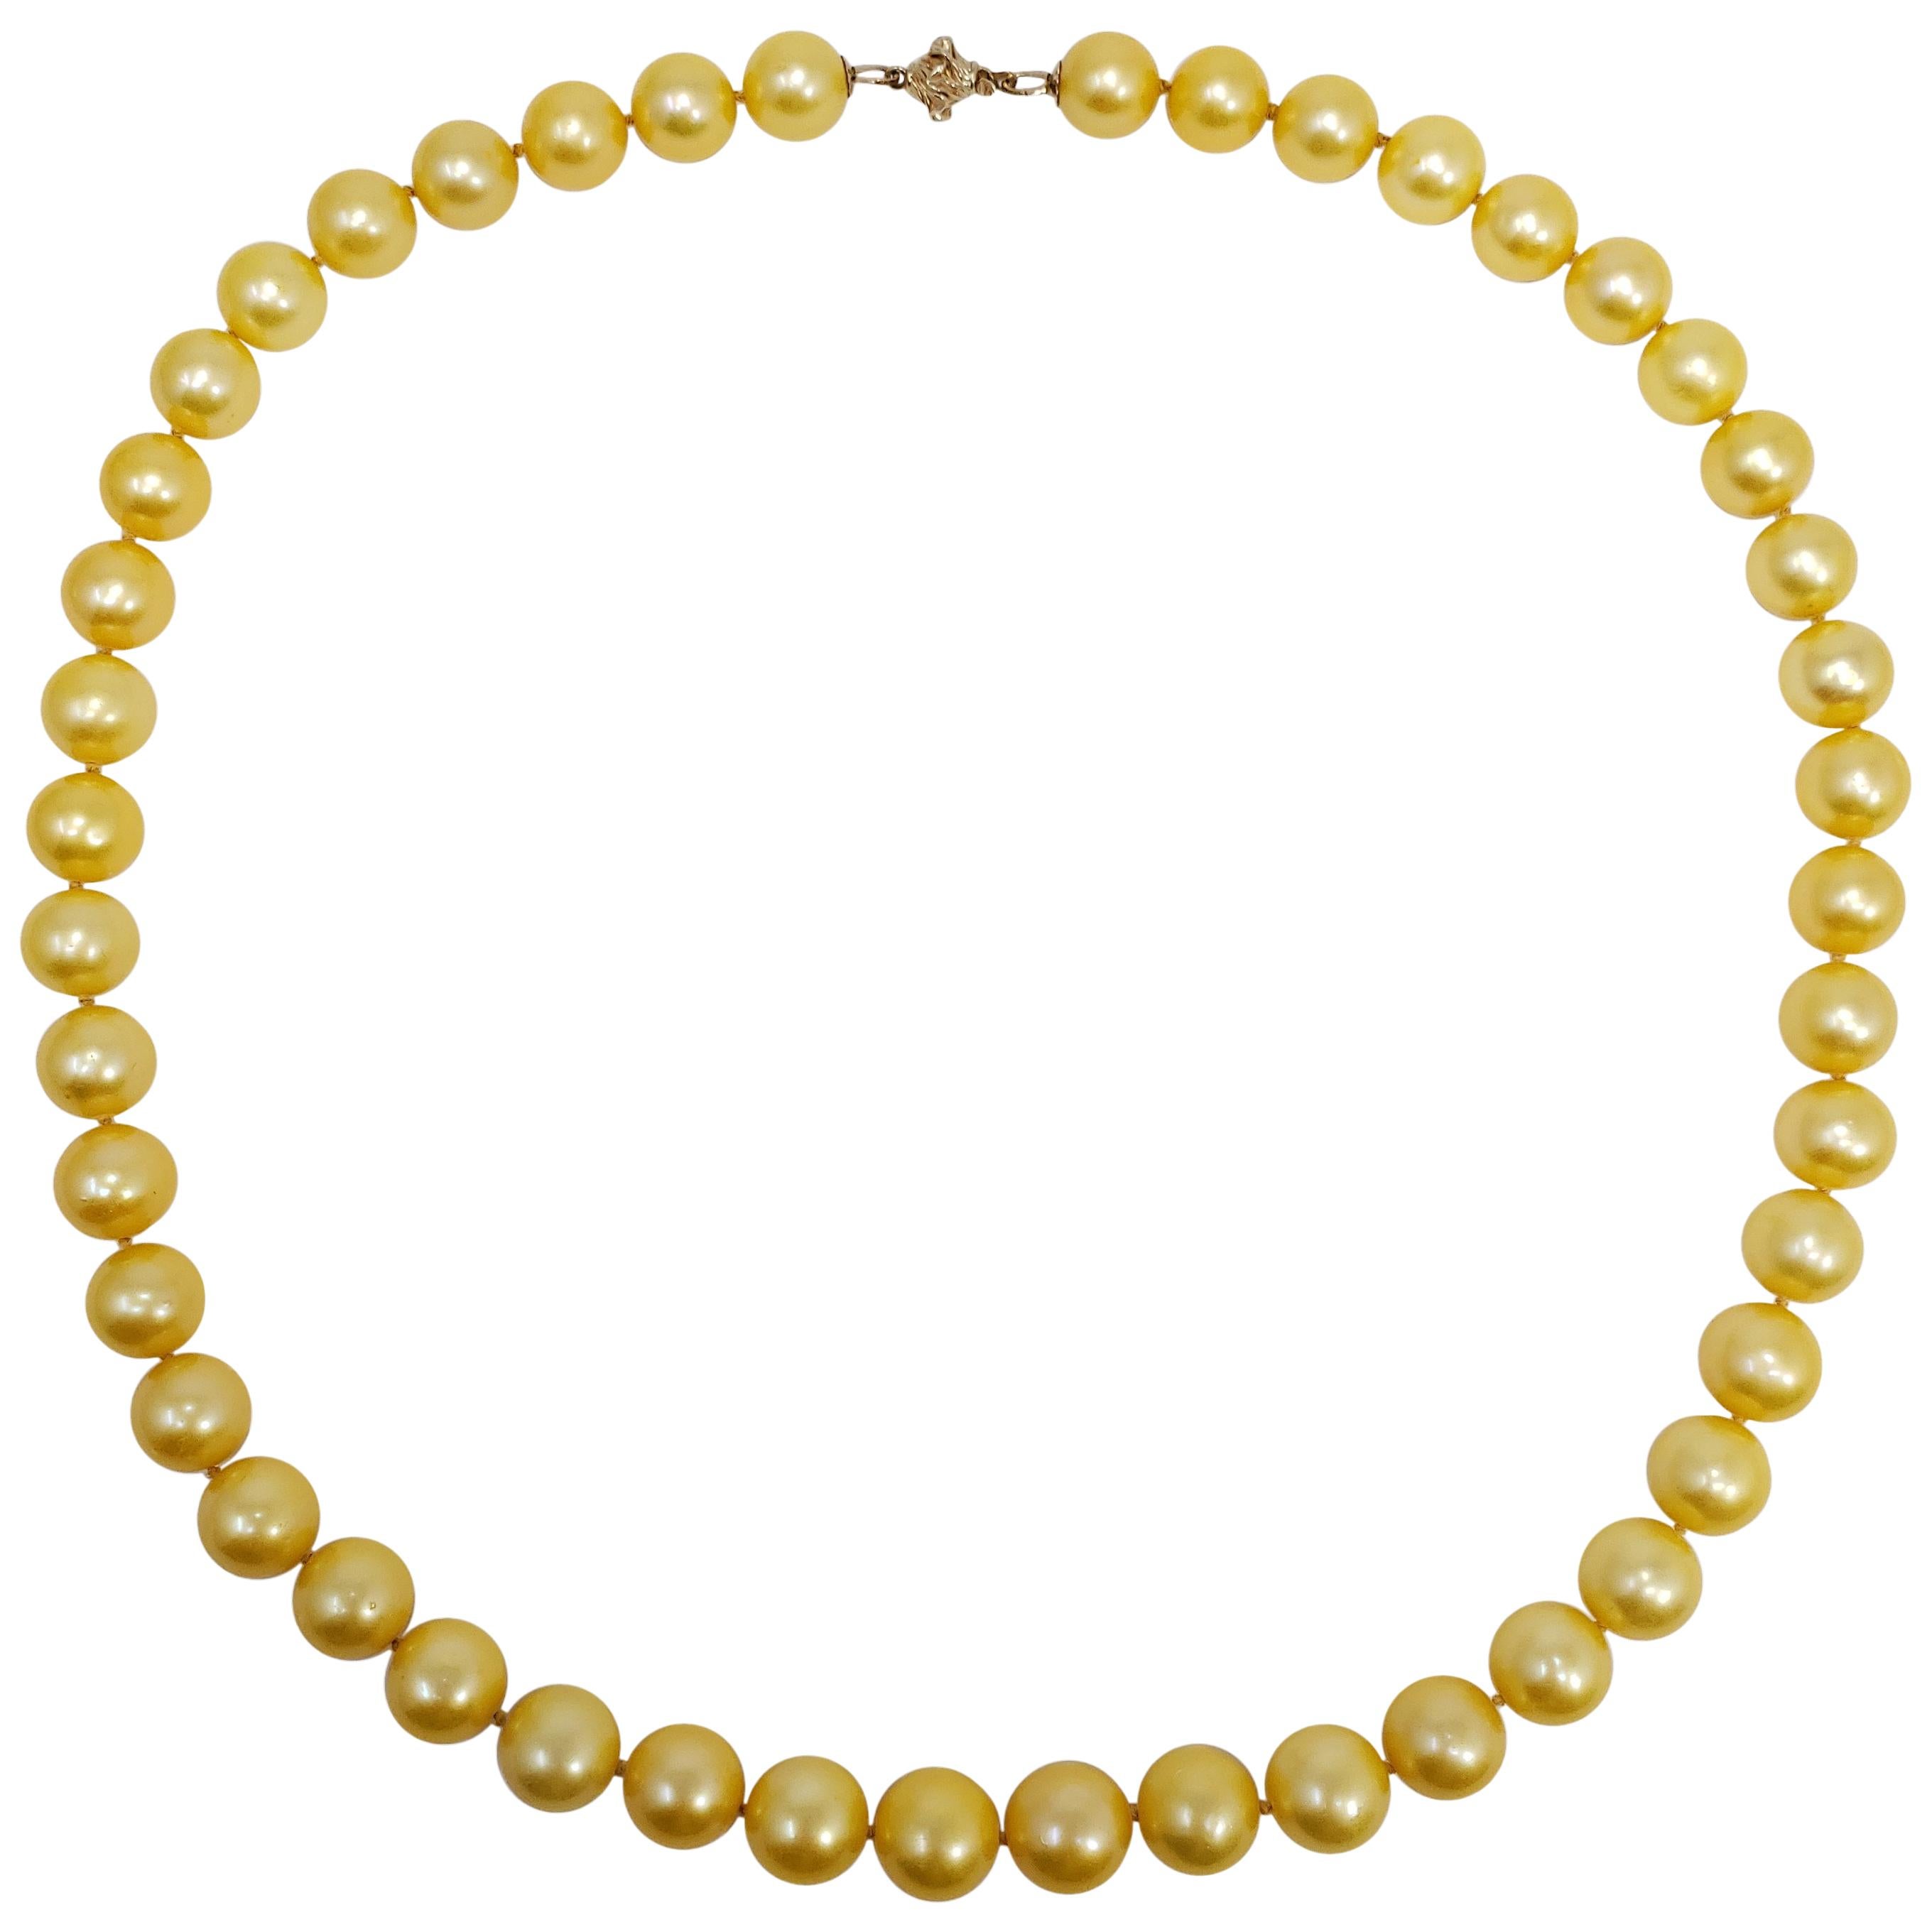 Halskette aus 14 Karat Gelbgold mit echtem Südseeperlen-Perlen-Knotenband